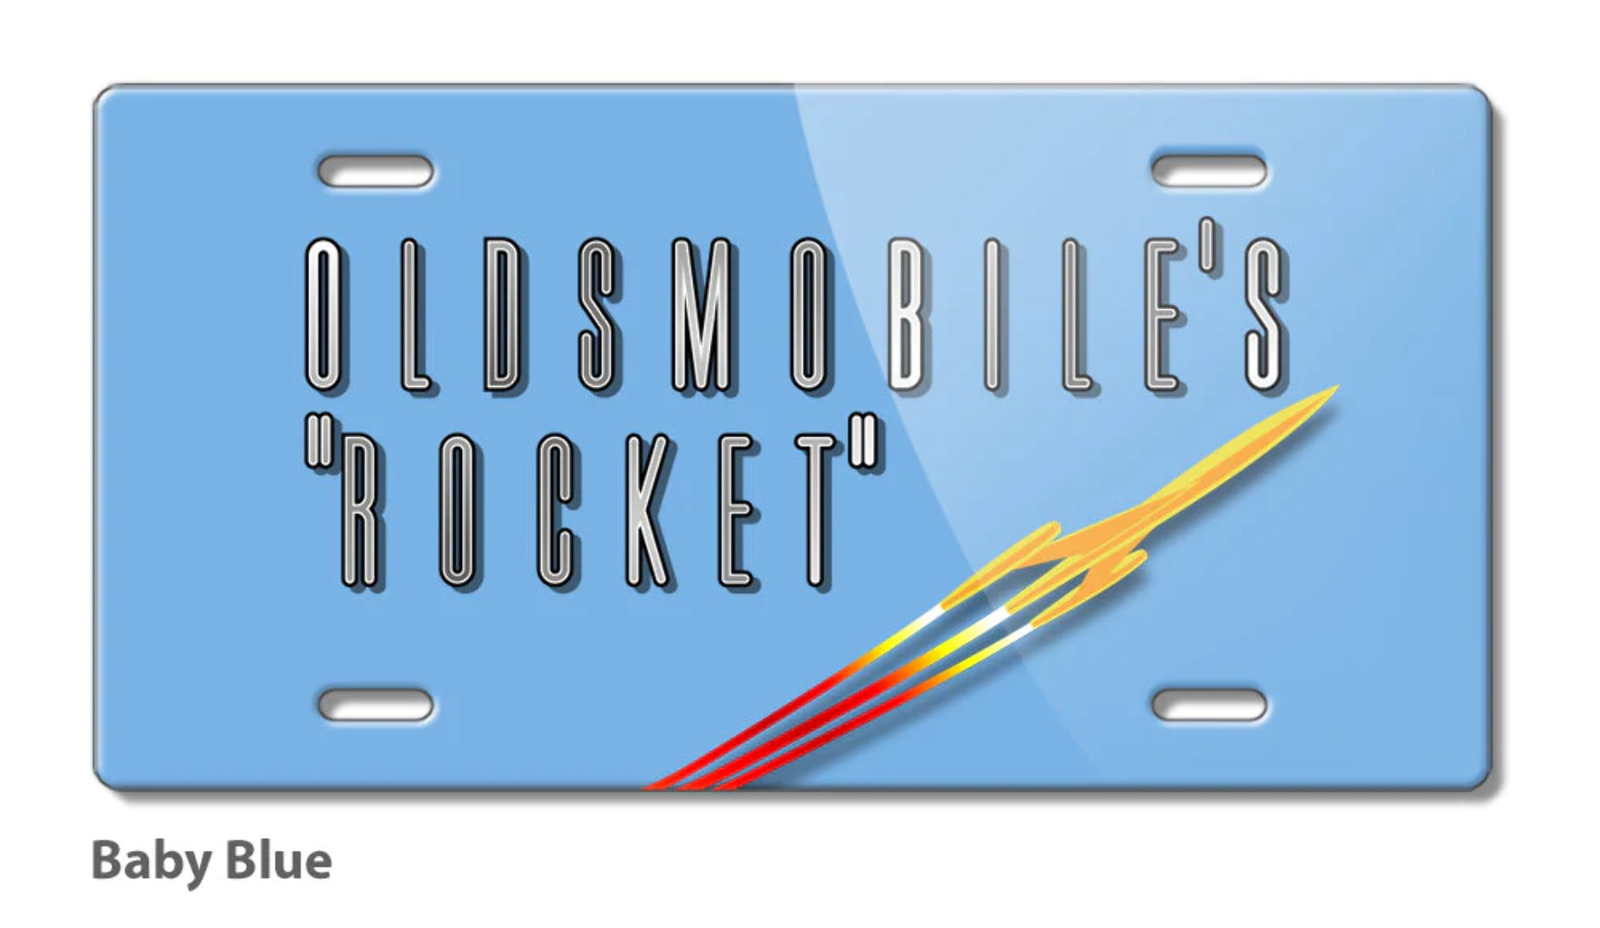 Oldsmobile Flying Rocket Emblem 1953 - 1955 Aluminum License Plate - 16 colors